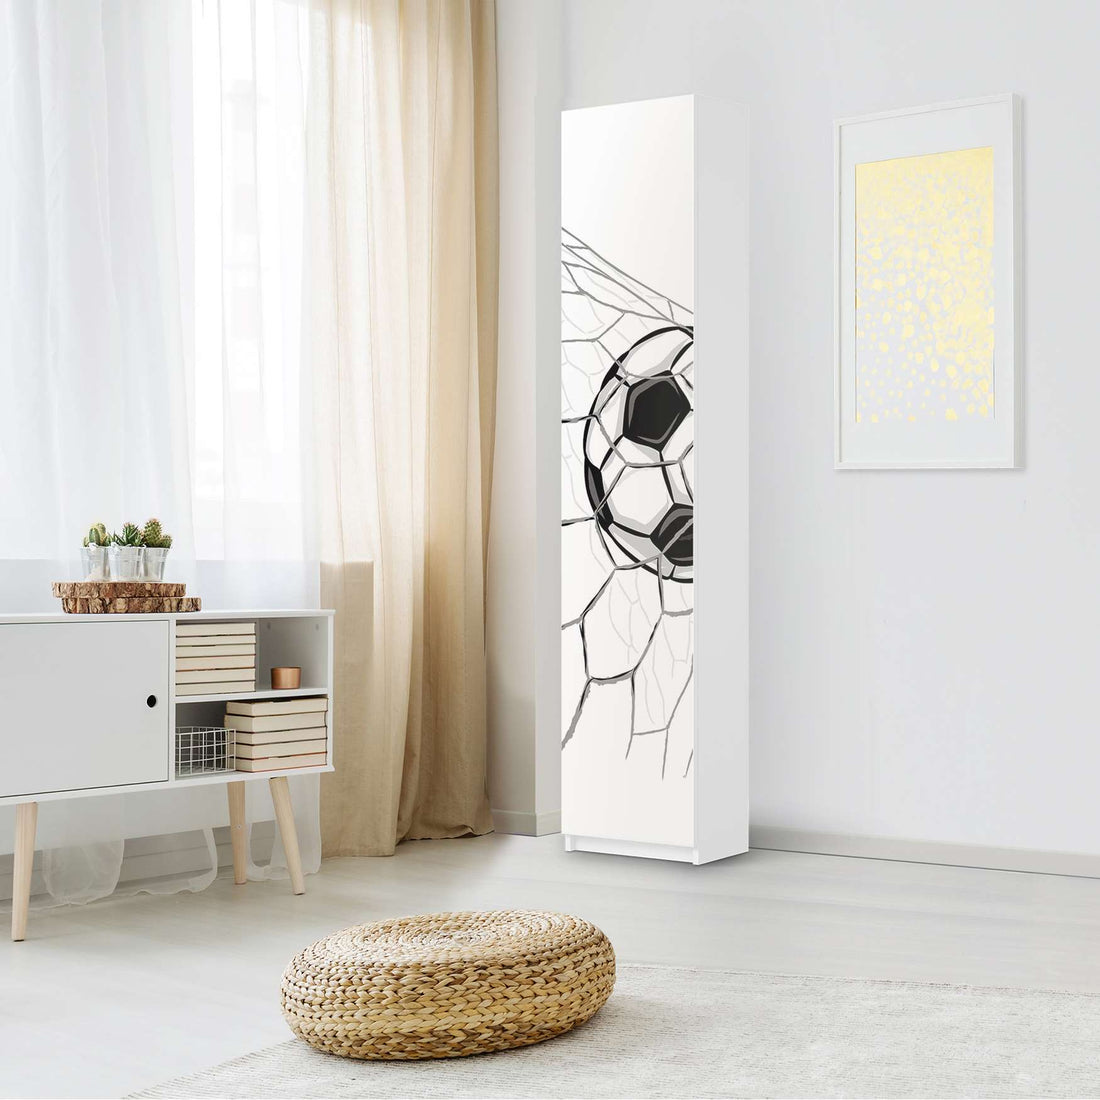 Klebefolie Eingenetzt - IKEA Pax Schrank 236 cm Höhe - 1 Tür - Kinderzimmer